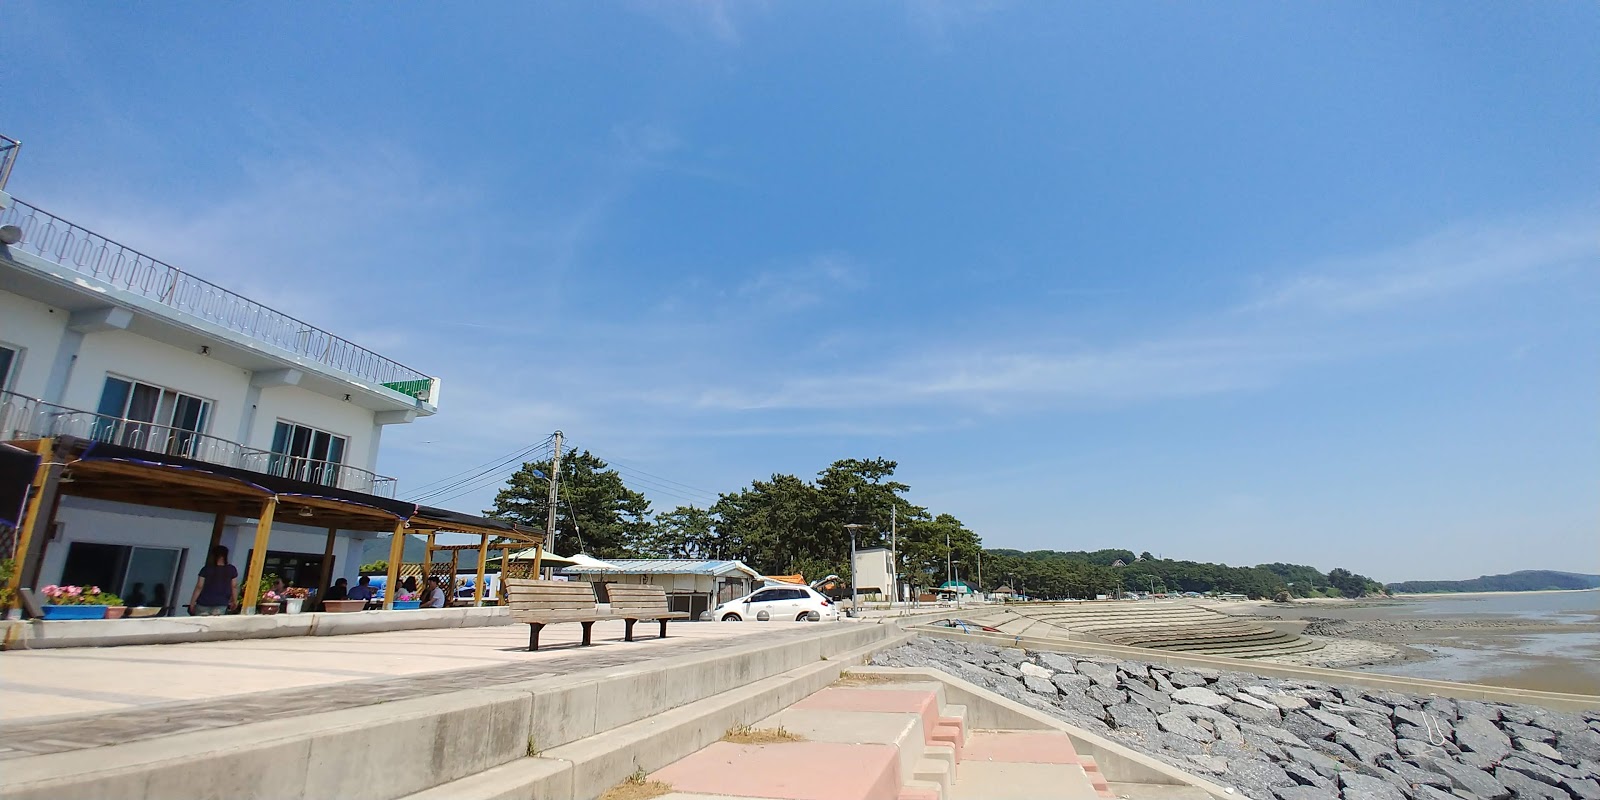 Photo de Biin Beach - endroit populaire parmi les connaisseurs de la détente